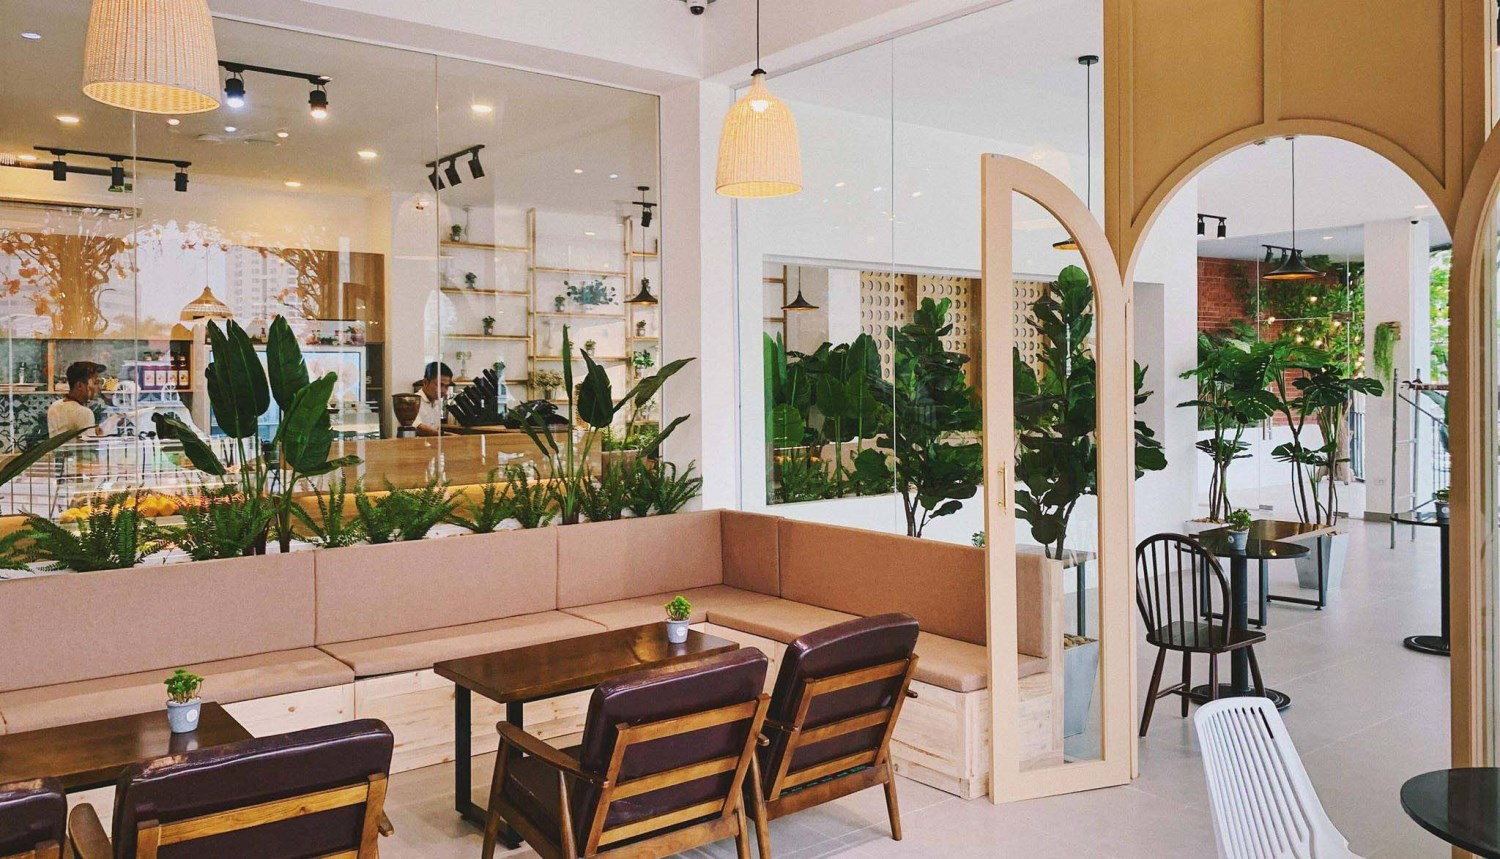 Quán Lofita Cafe sẽ làm bạn bị thu hút bởi không gian với thiết kế đương đại và được trang trí vô cùng tỉ mẩn